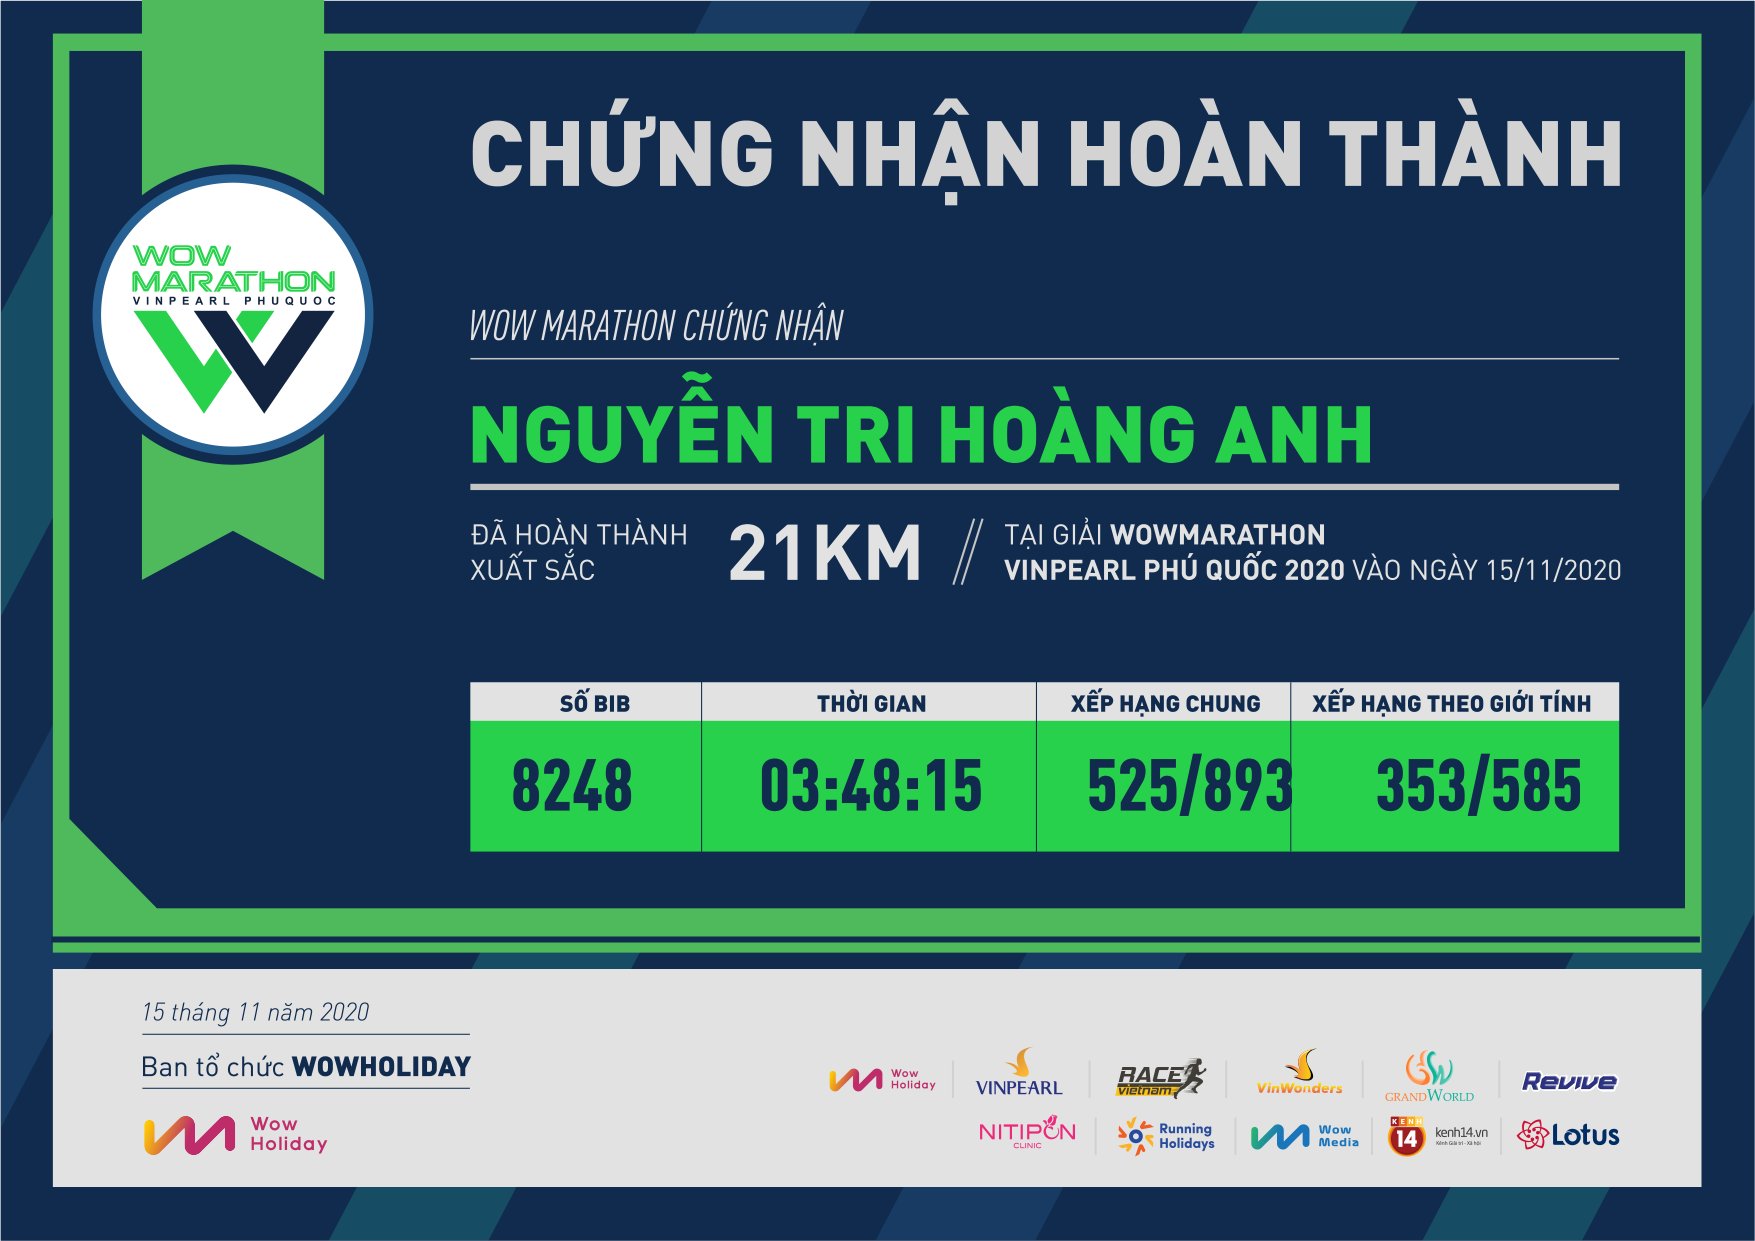 8248 - Nguyễn Tri Hoàng Anh